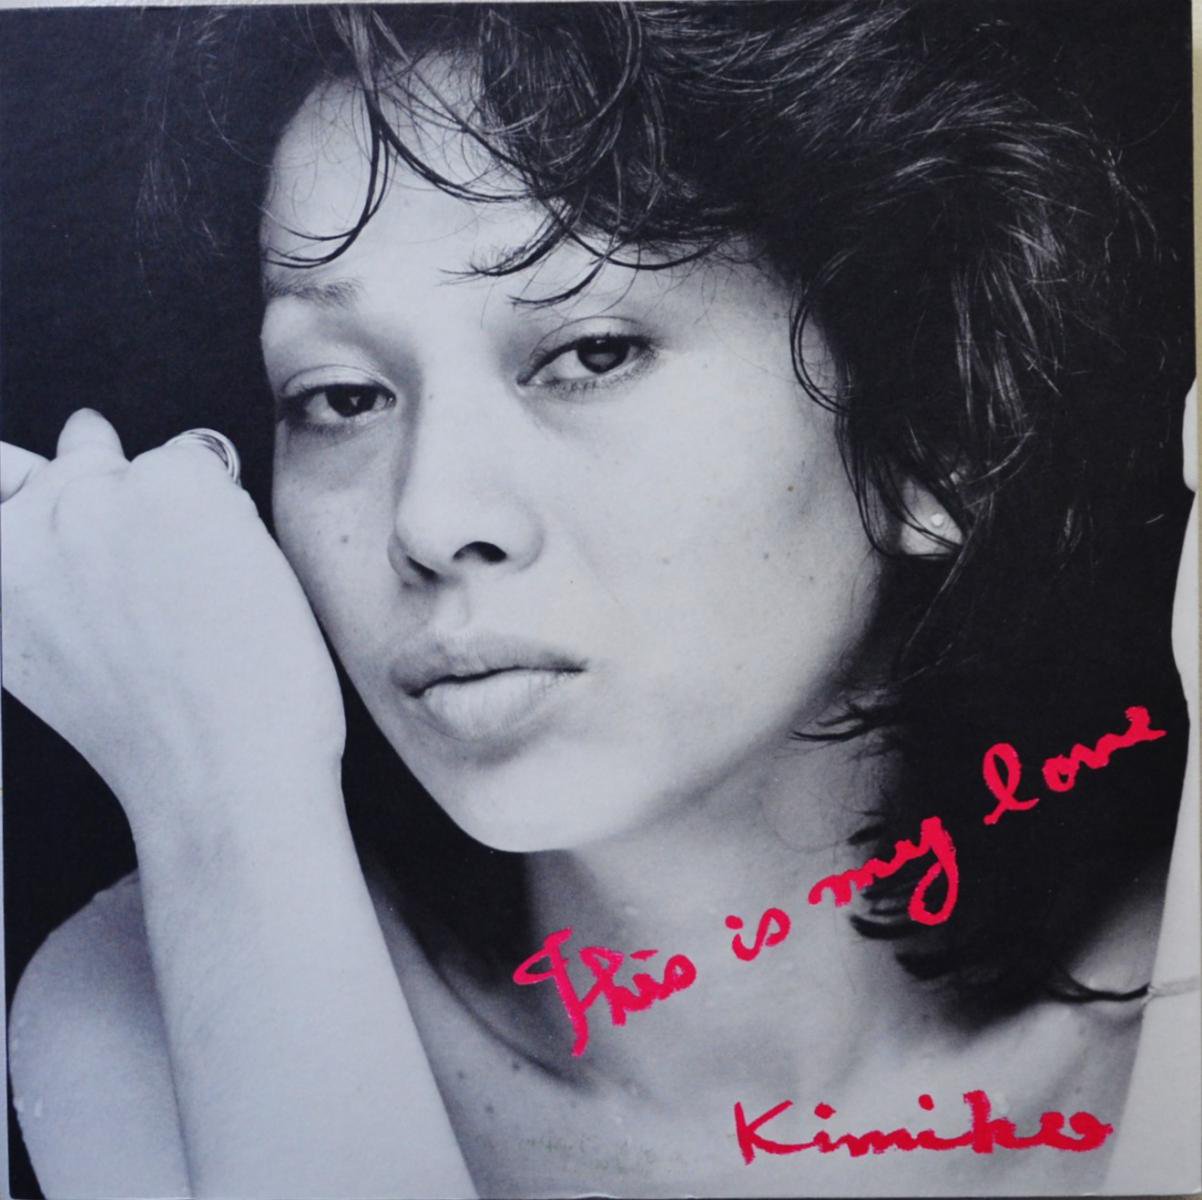 笠井紀美子 KIMIKO KASAI  / マイ・ラヴ THIS IS MY LOVE (LP)